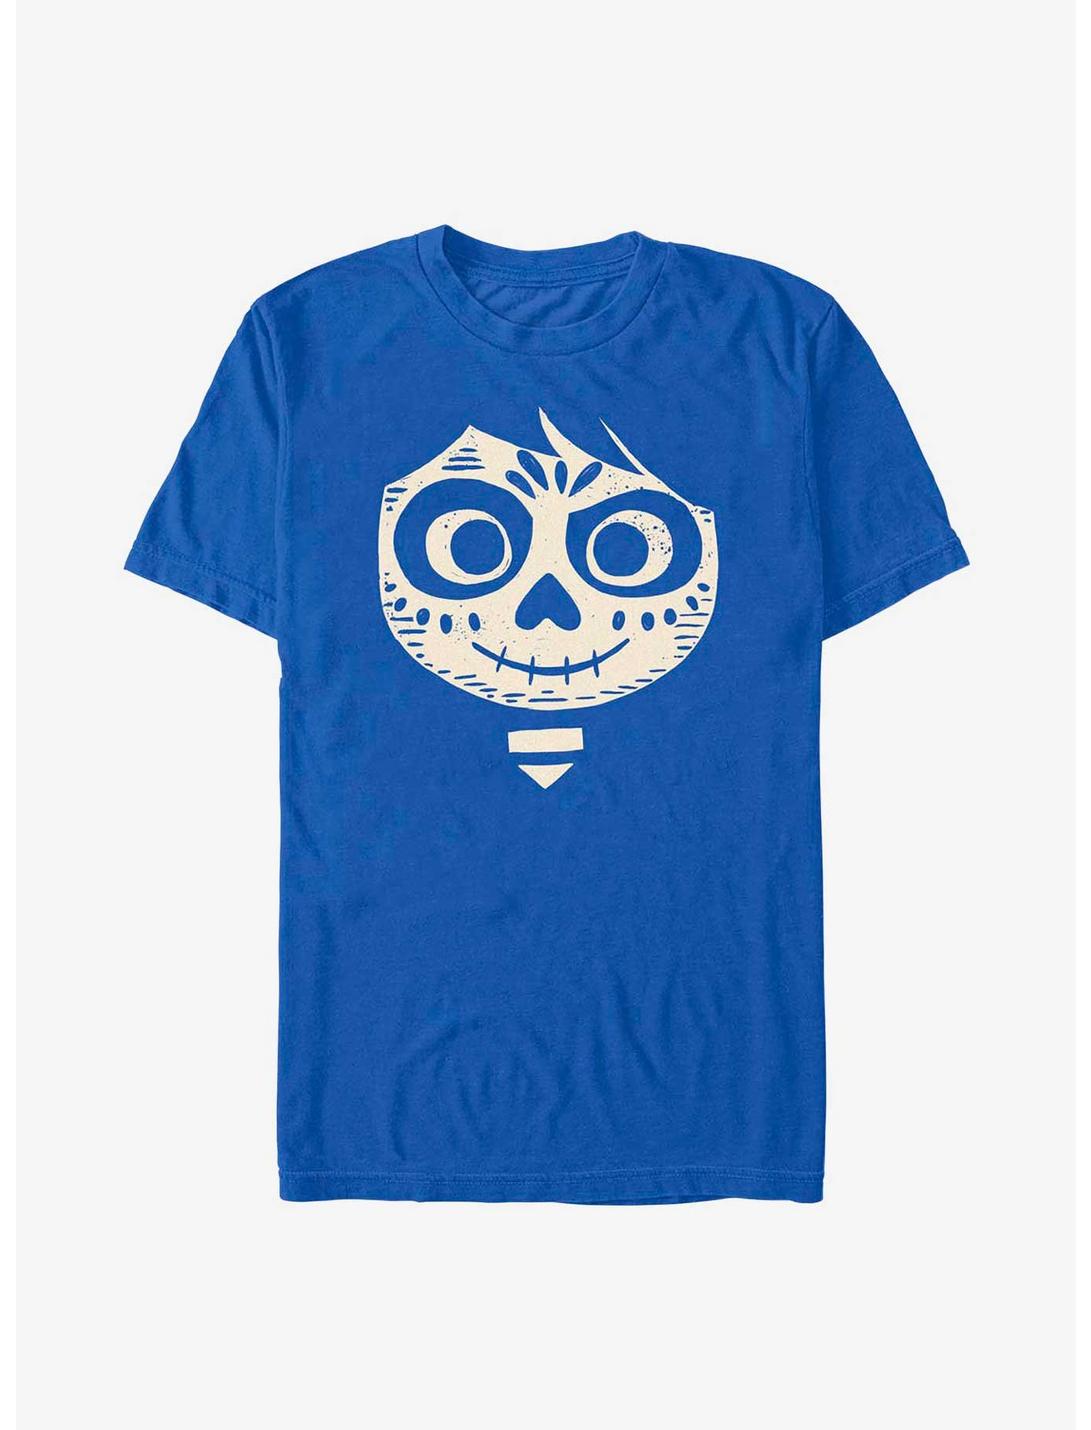 Disney Pixar Coco Miguel Face T-Shirt, ROYAL, hi-res